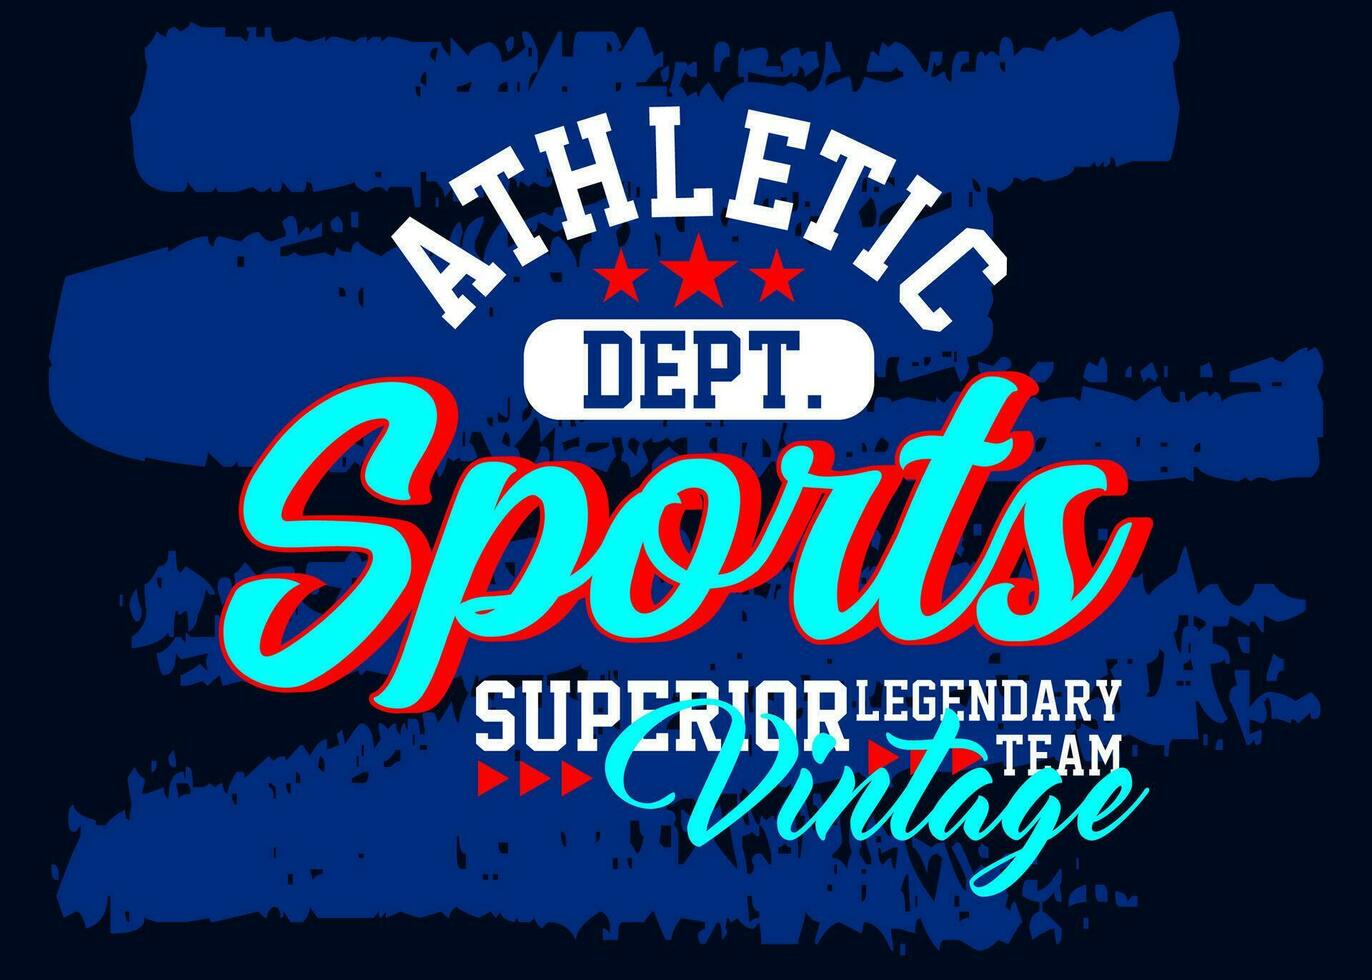 atletisk sporter legendary team typsnitt överlägsen årgång högskola, typografi, för t-shirt, affischer, etiketter, etc. vektor